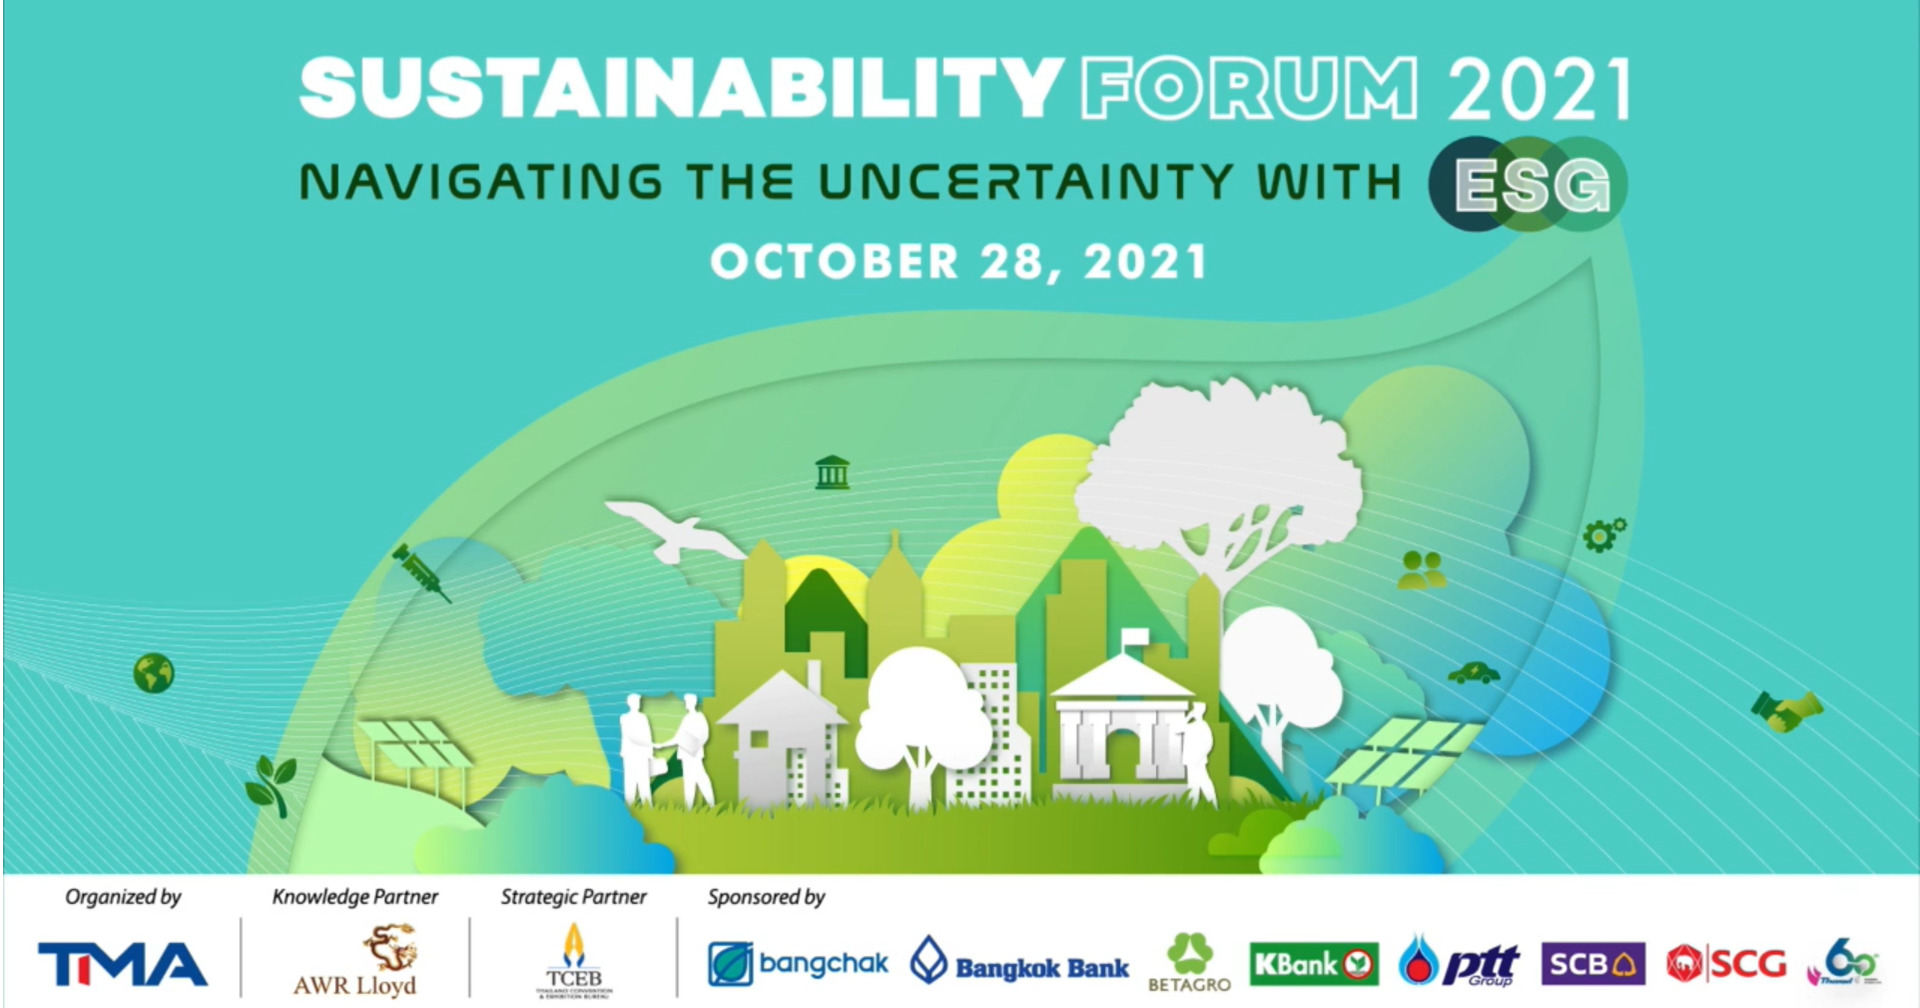 ปลุกธุรกิจไทยรับมือ “วิกฤตโลกร้อน” โดยเครือ CP ในเวที Sustainability Forum 2021